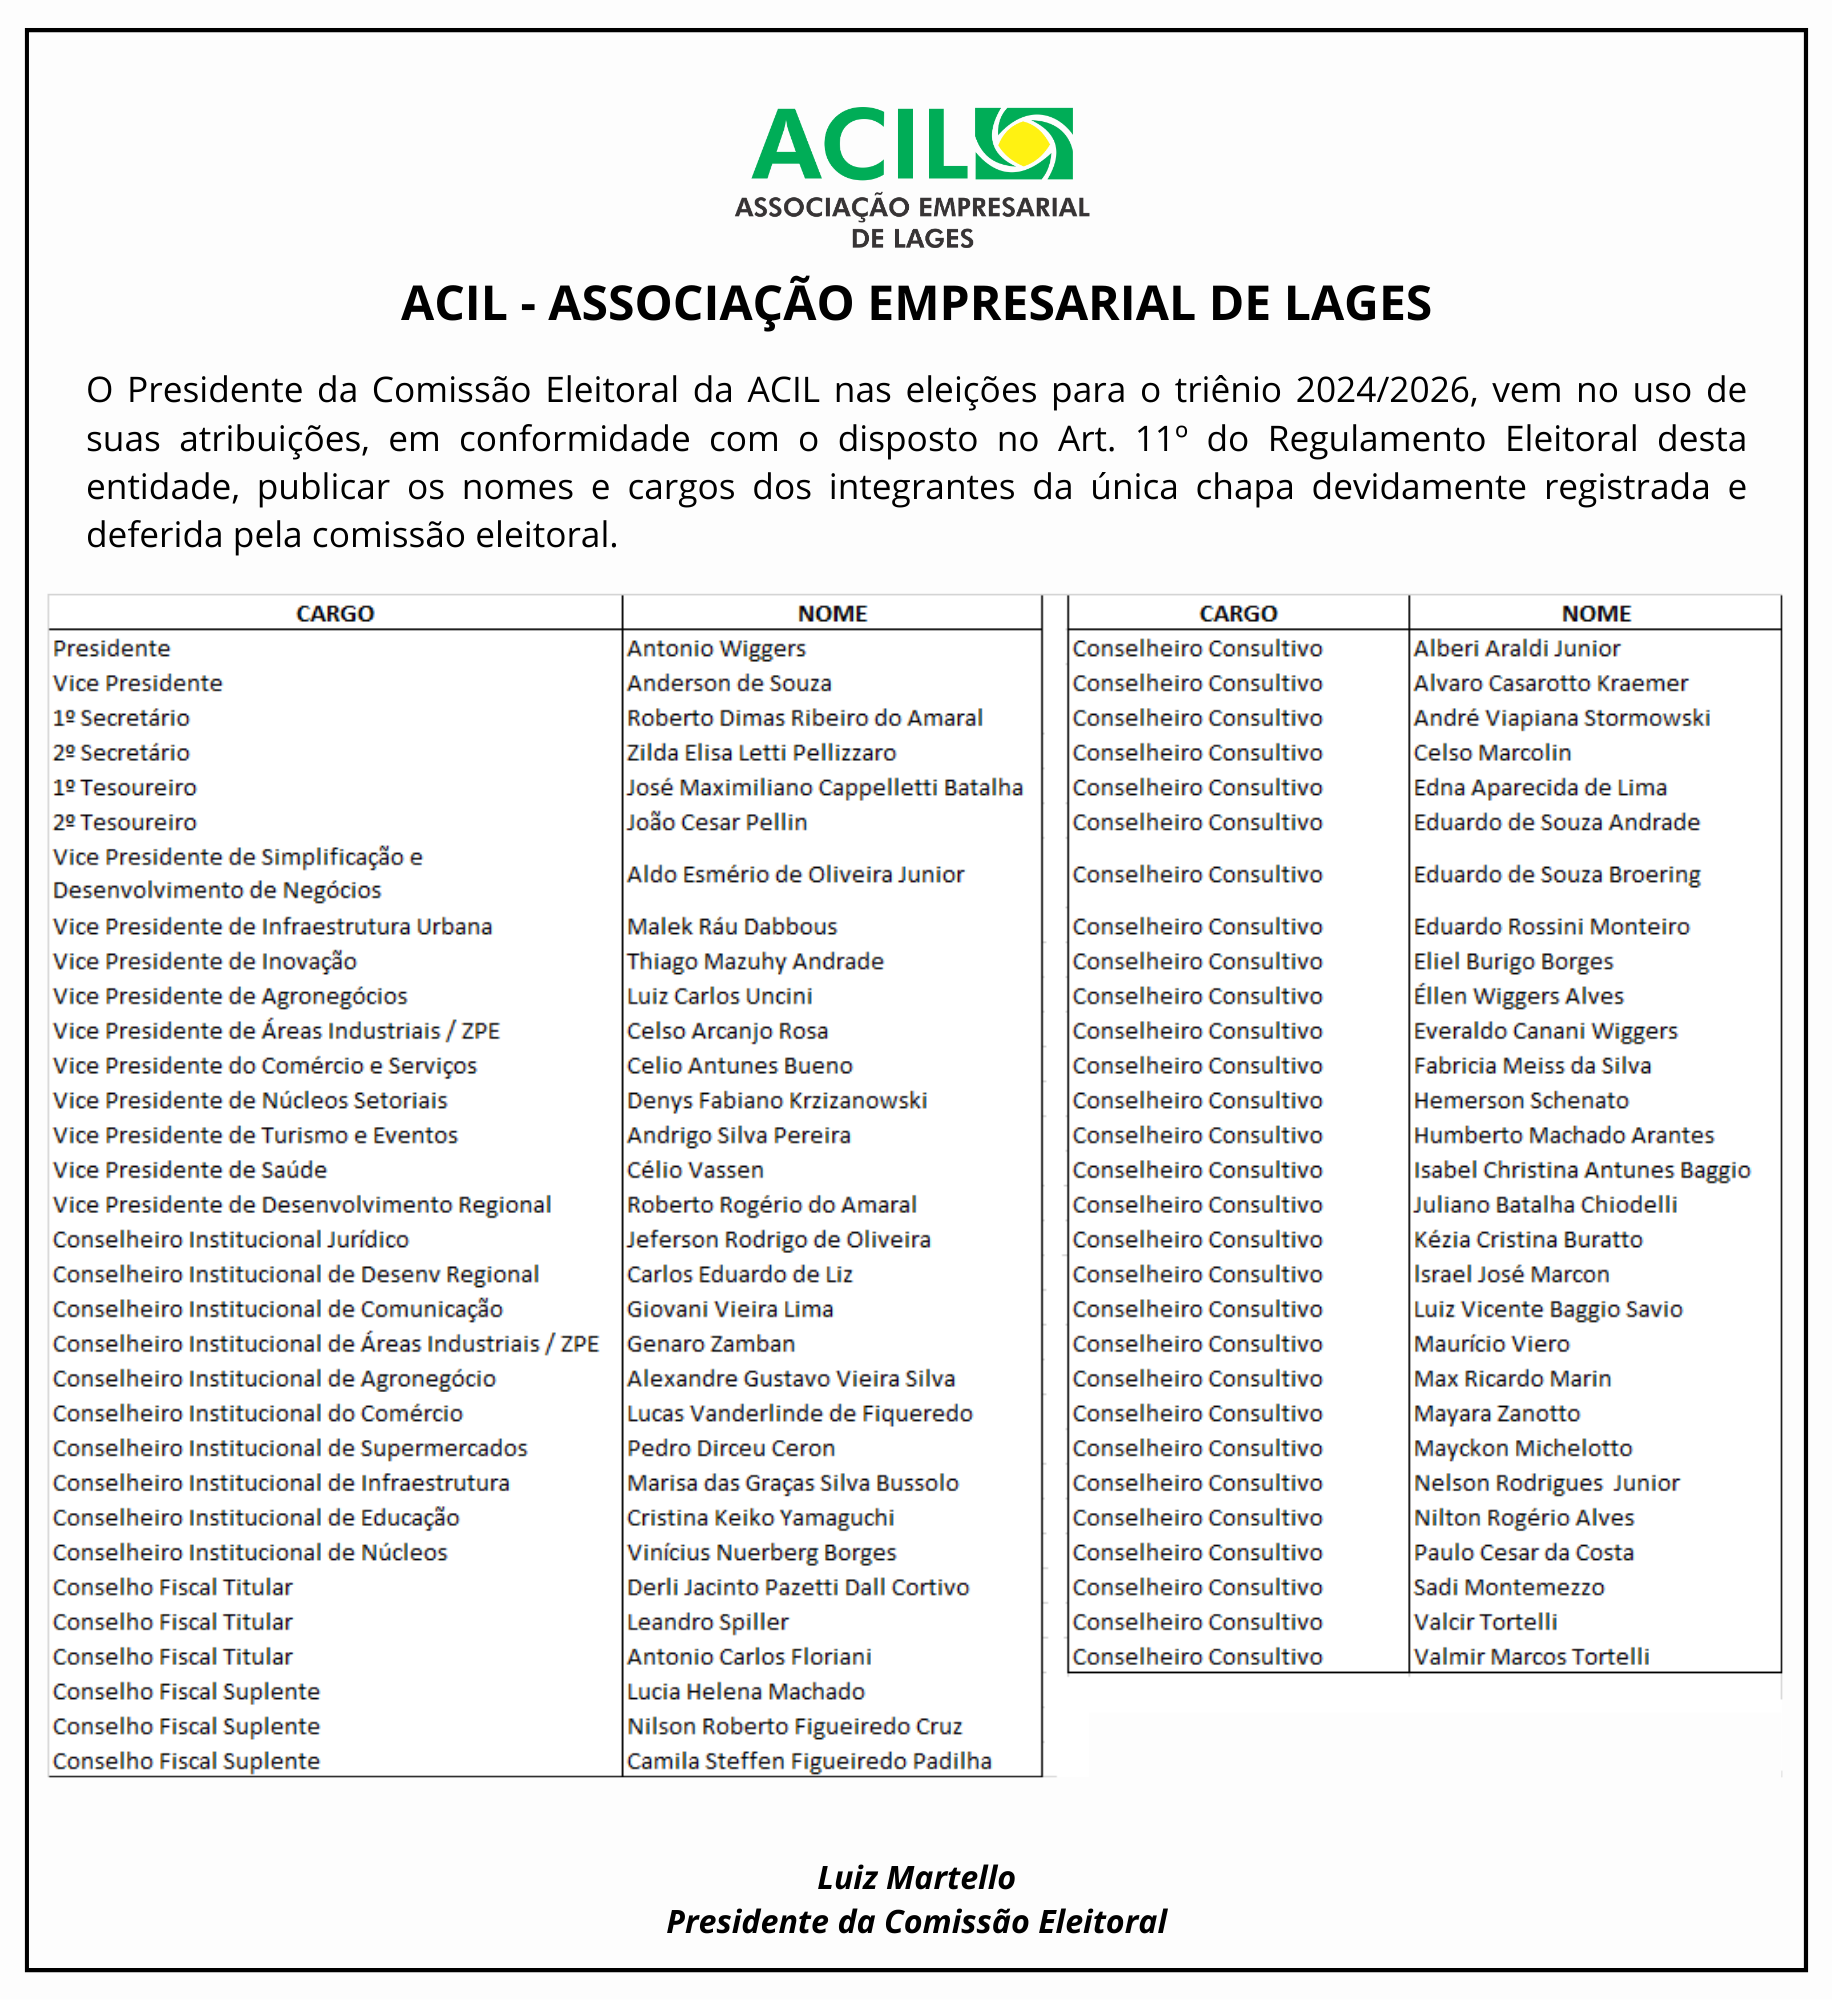 ACIL convoca seus associados para assembleia que elegerá a diretoria e conselhos para gestão 2024/2026